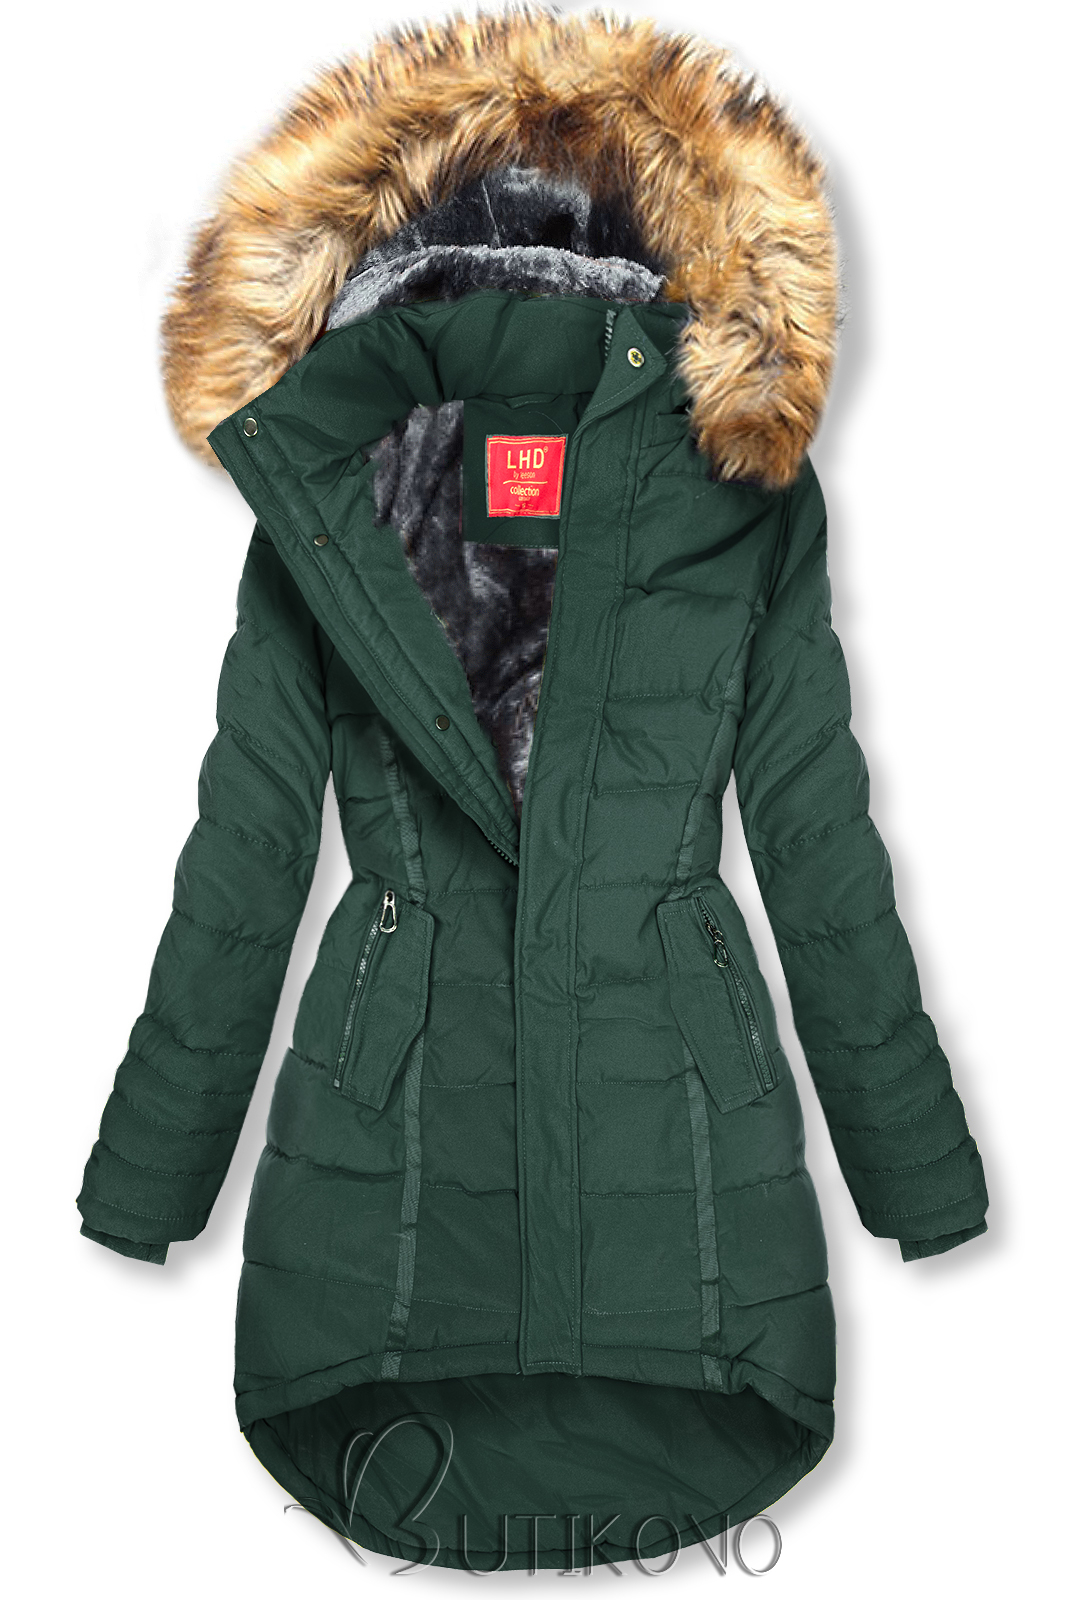 Tmavozelená prešívaná zimná bunda s kapucňou